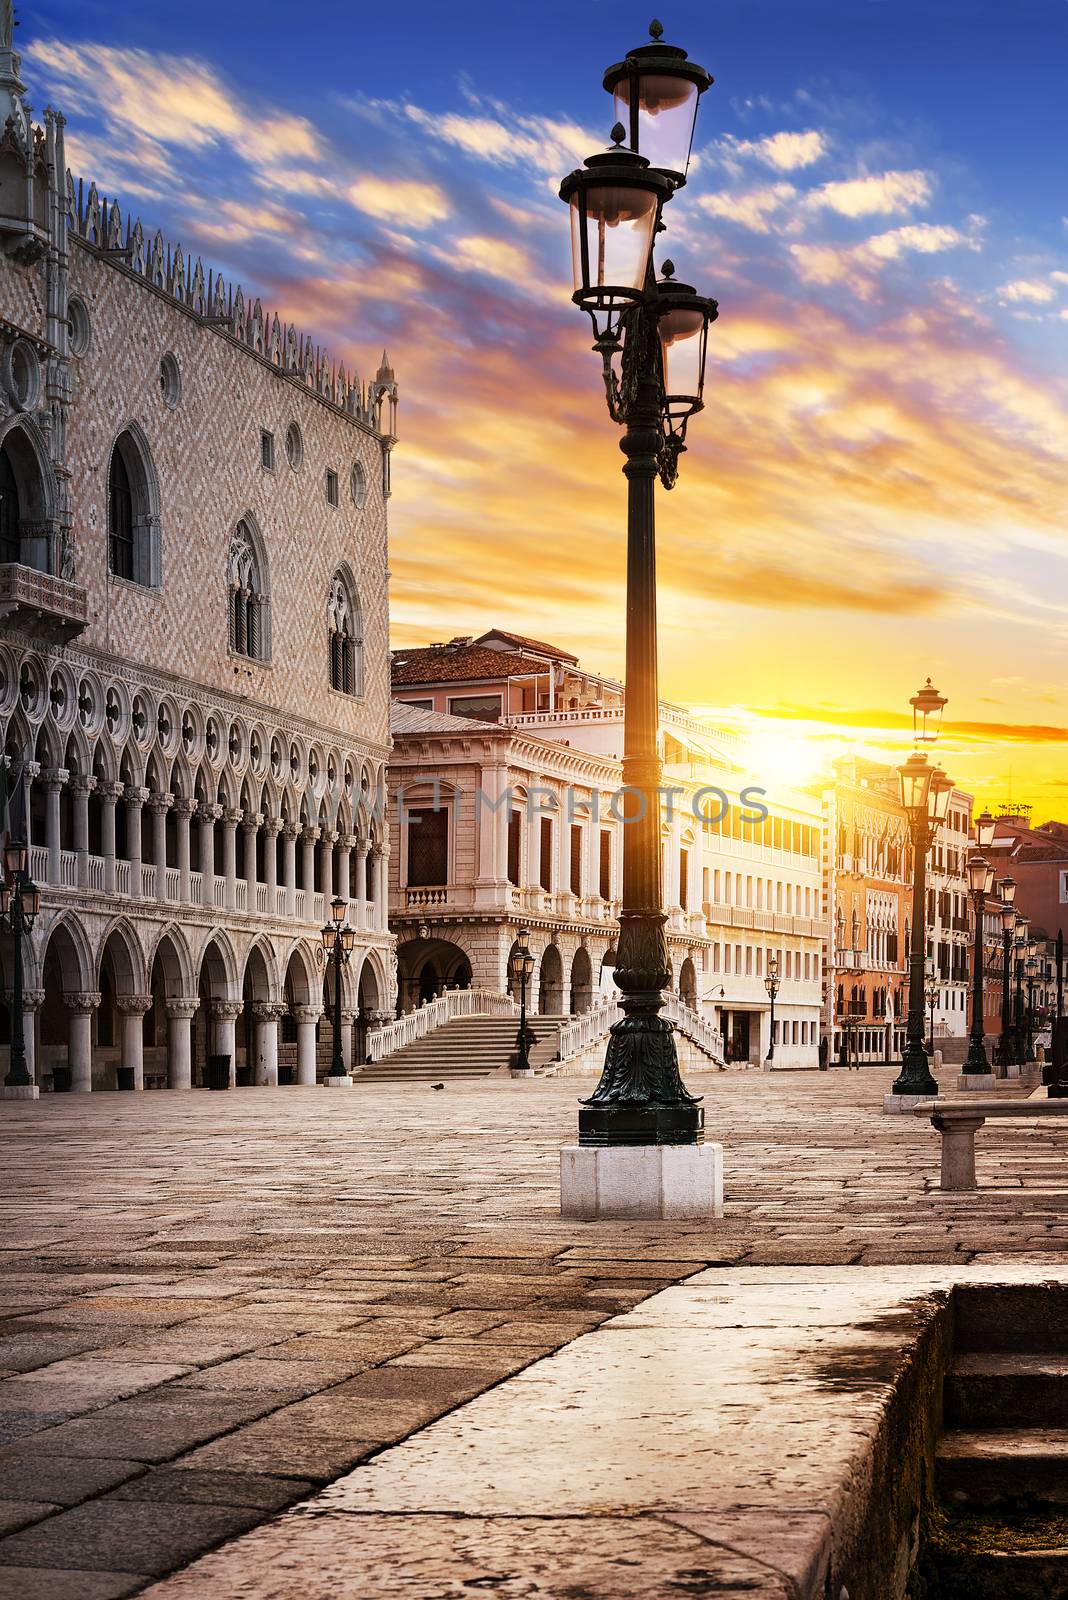 Saint Mark square with San Giorgio di Maggiore church in the background - Venice, Venezia, Italy, Europe 